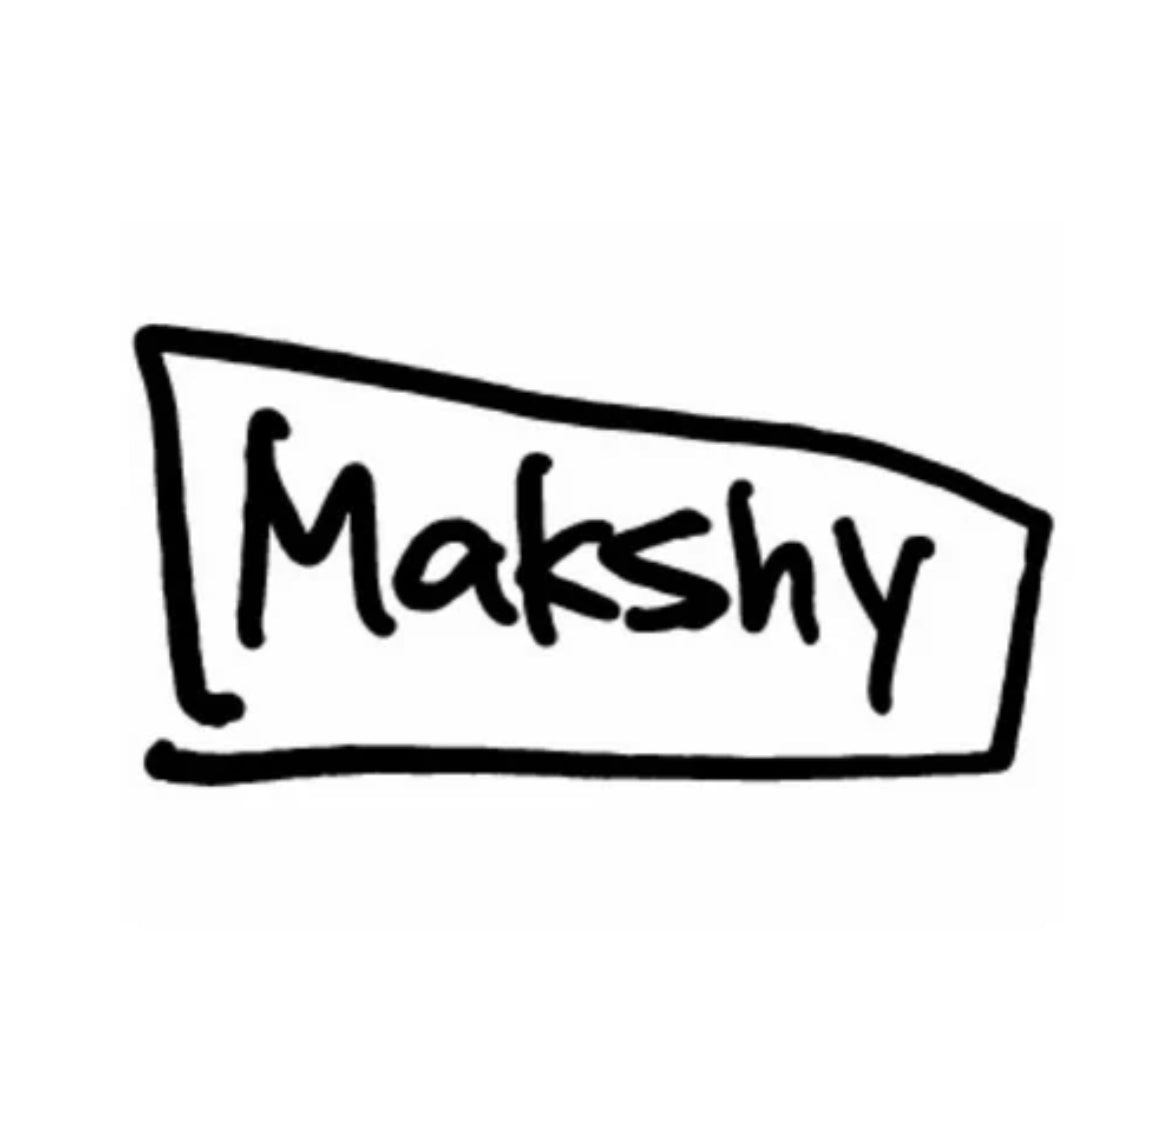 Makshy Millinery